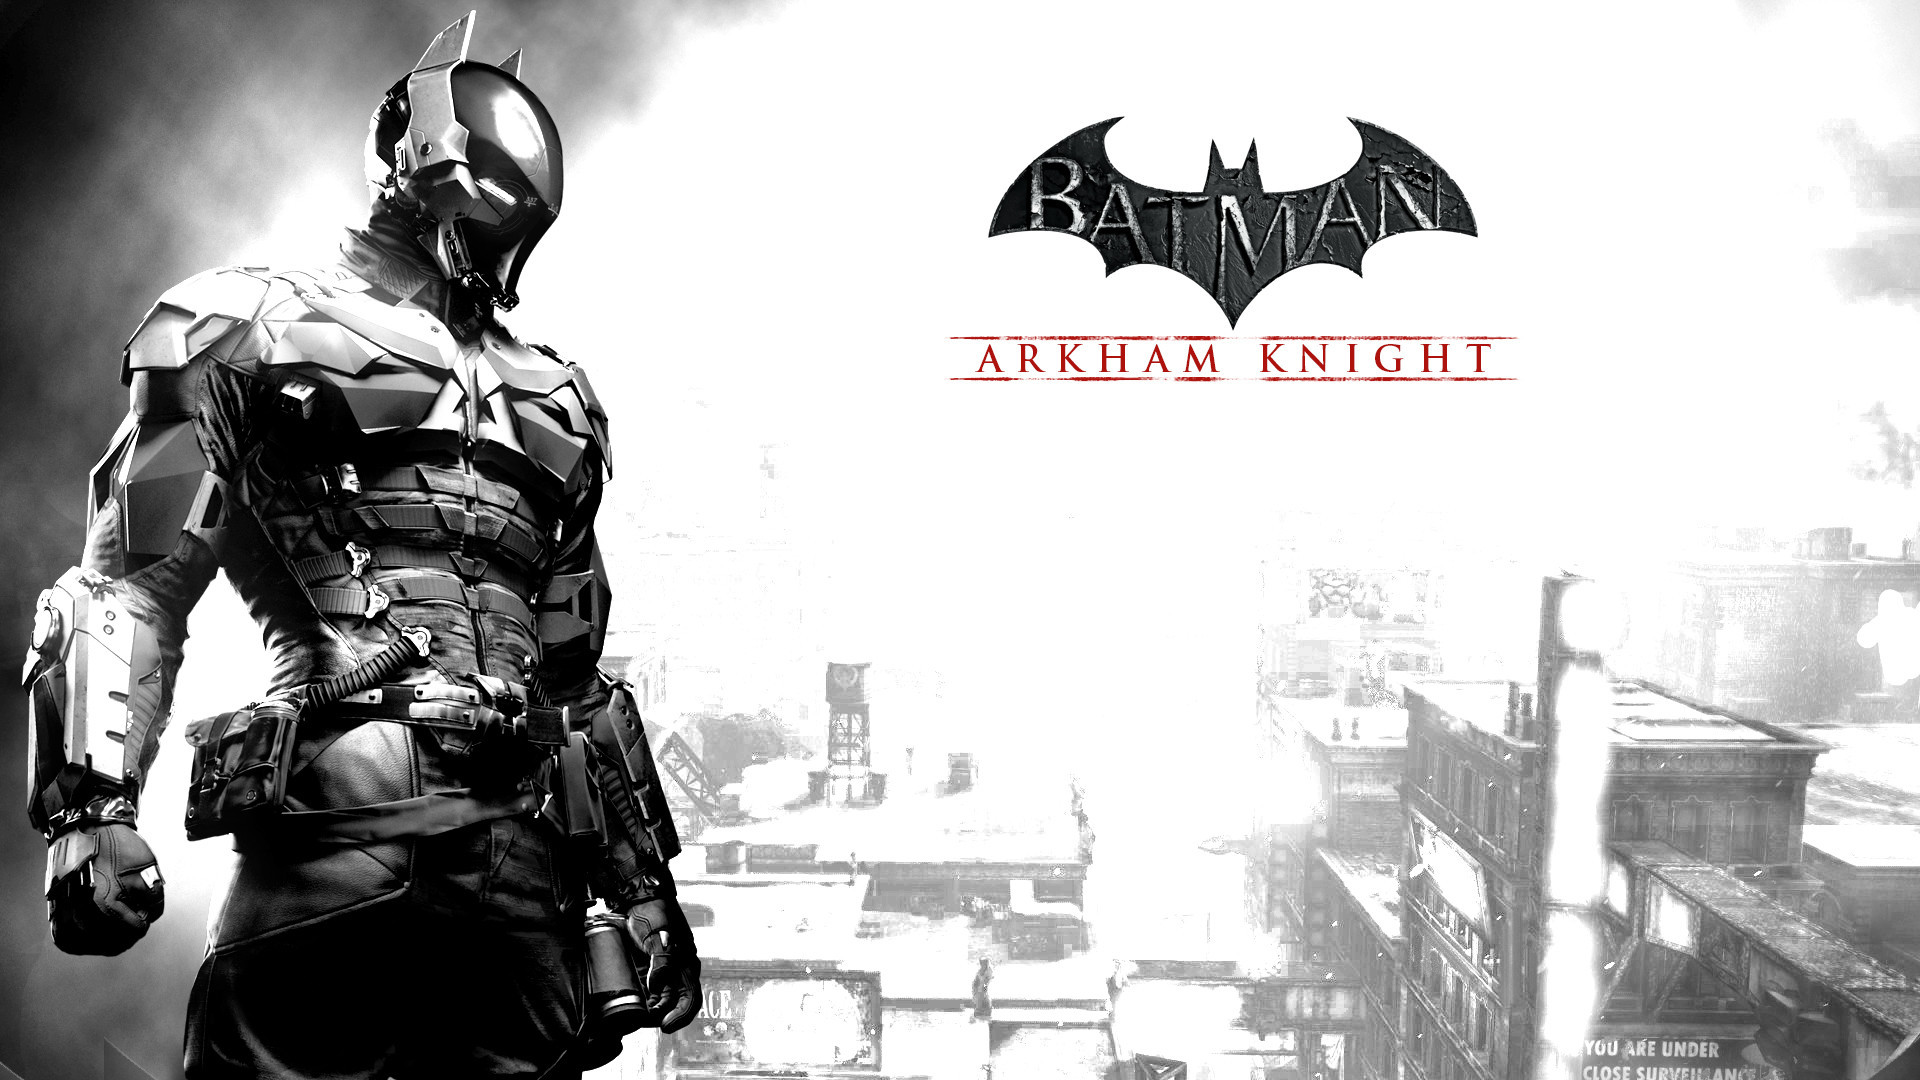 1920x1080 Download. Â« Batman Arkham Knight Cool Backgrounds Wallpapers Â· Batman  Arkham Knight Amazing ...